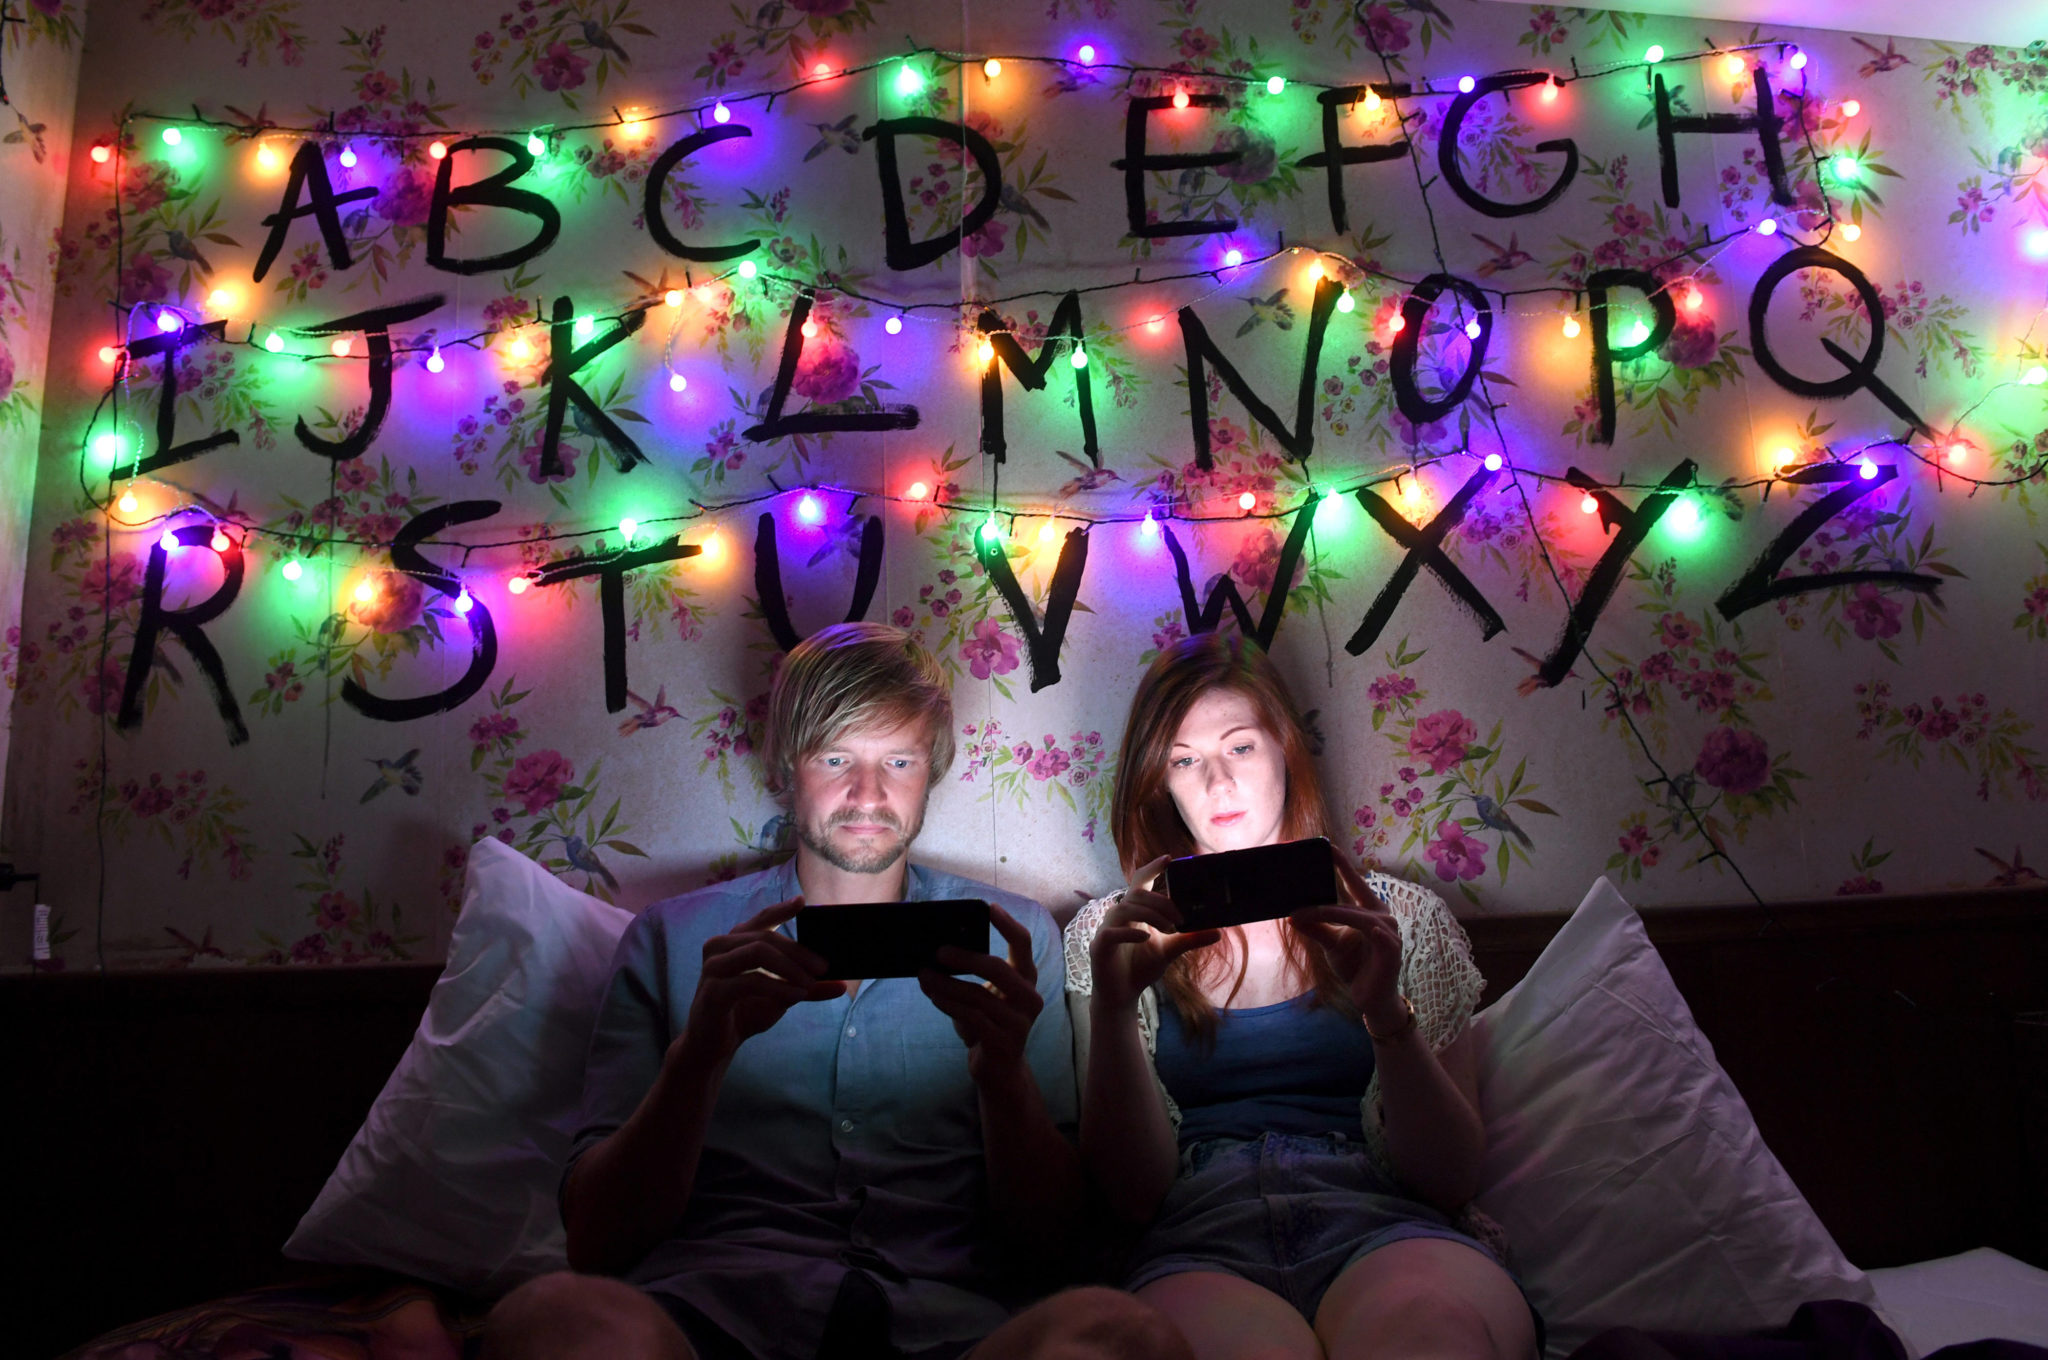 Ciemny pokój oświetlony kolorowymi lampkami, na ścianie wypisany alfabet. Na łózku chłopak i dziewczyna patrzą w świecące telefony komórkowe.